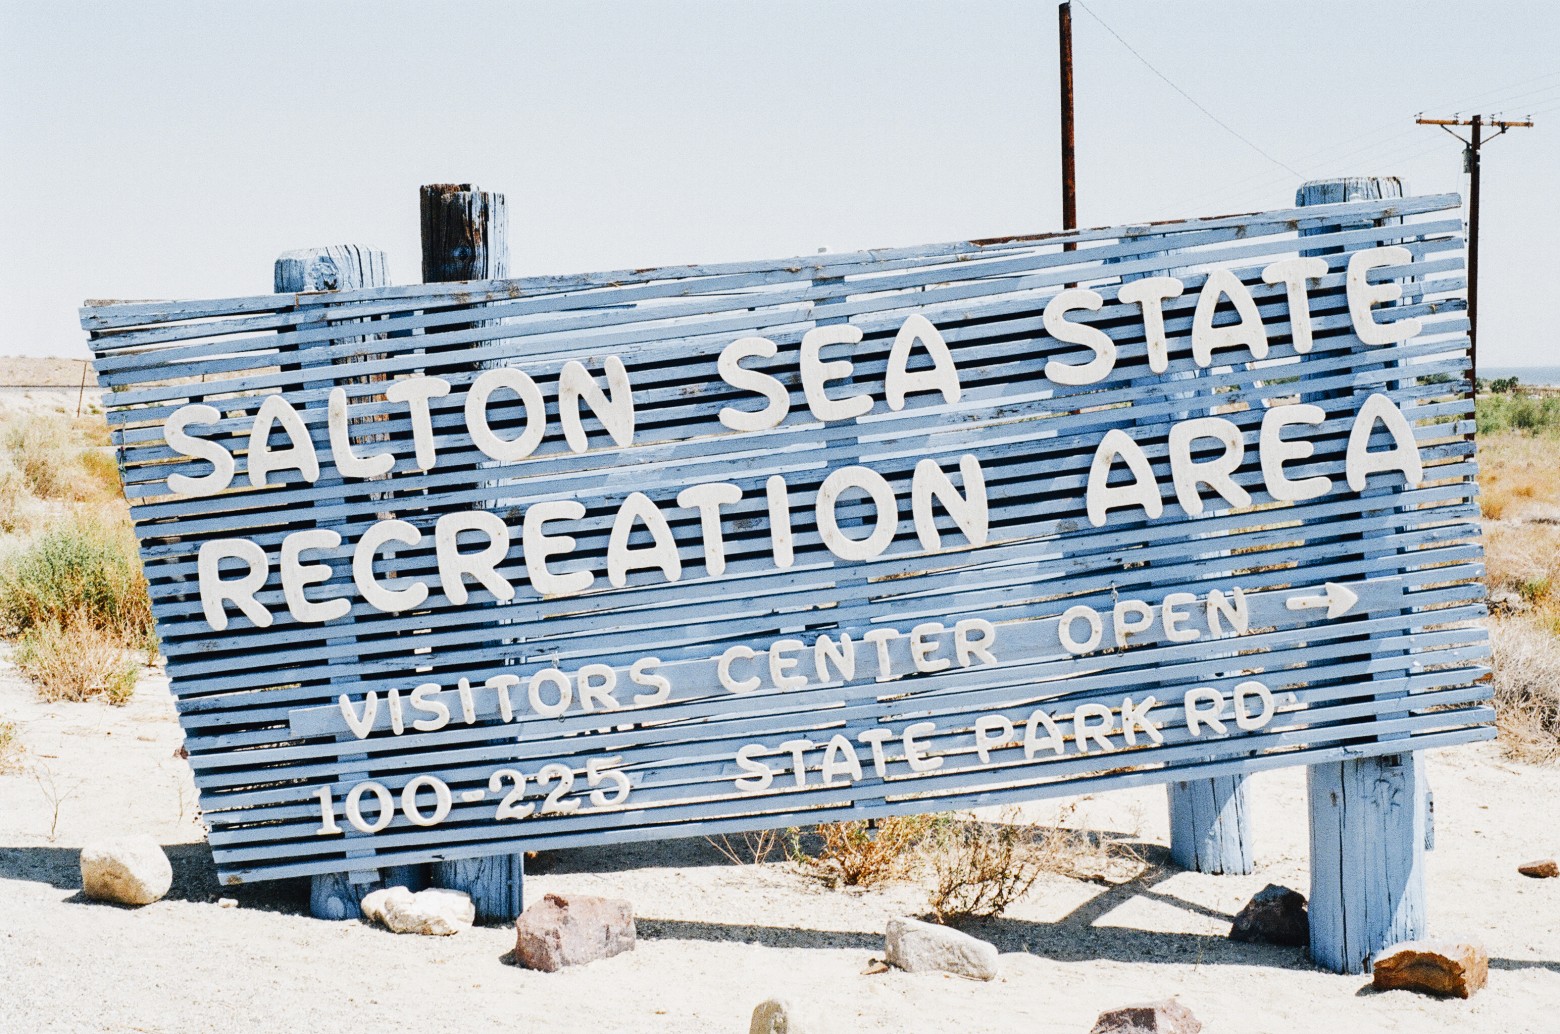 Salton Sea recreation area sign